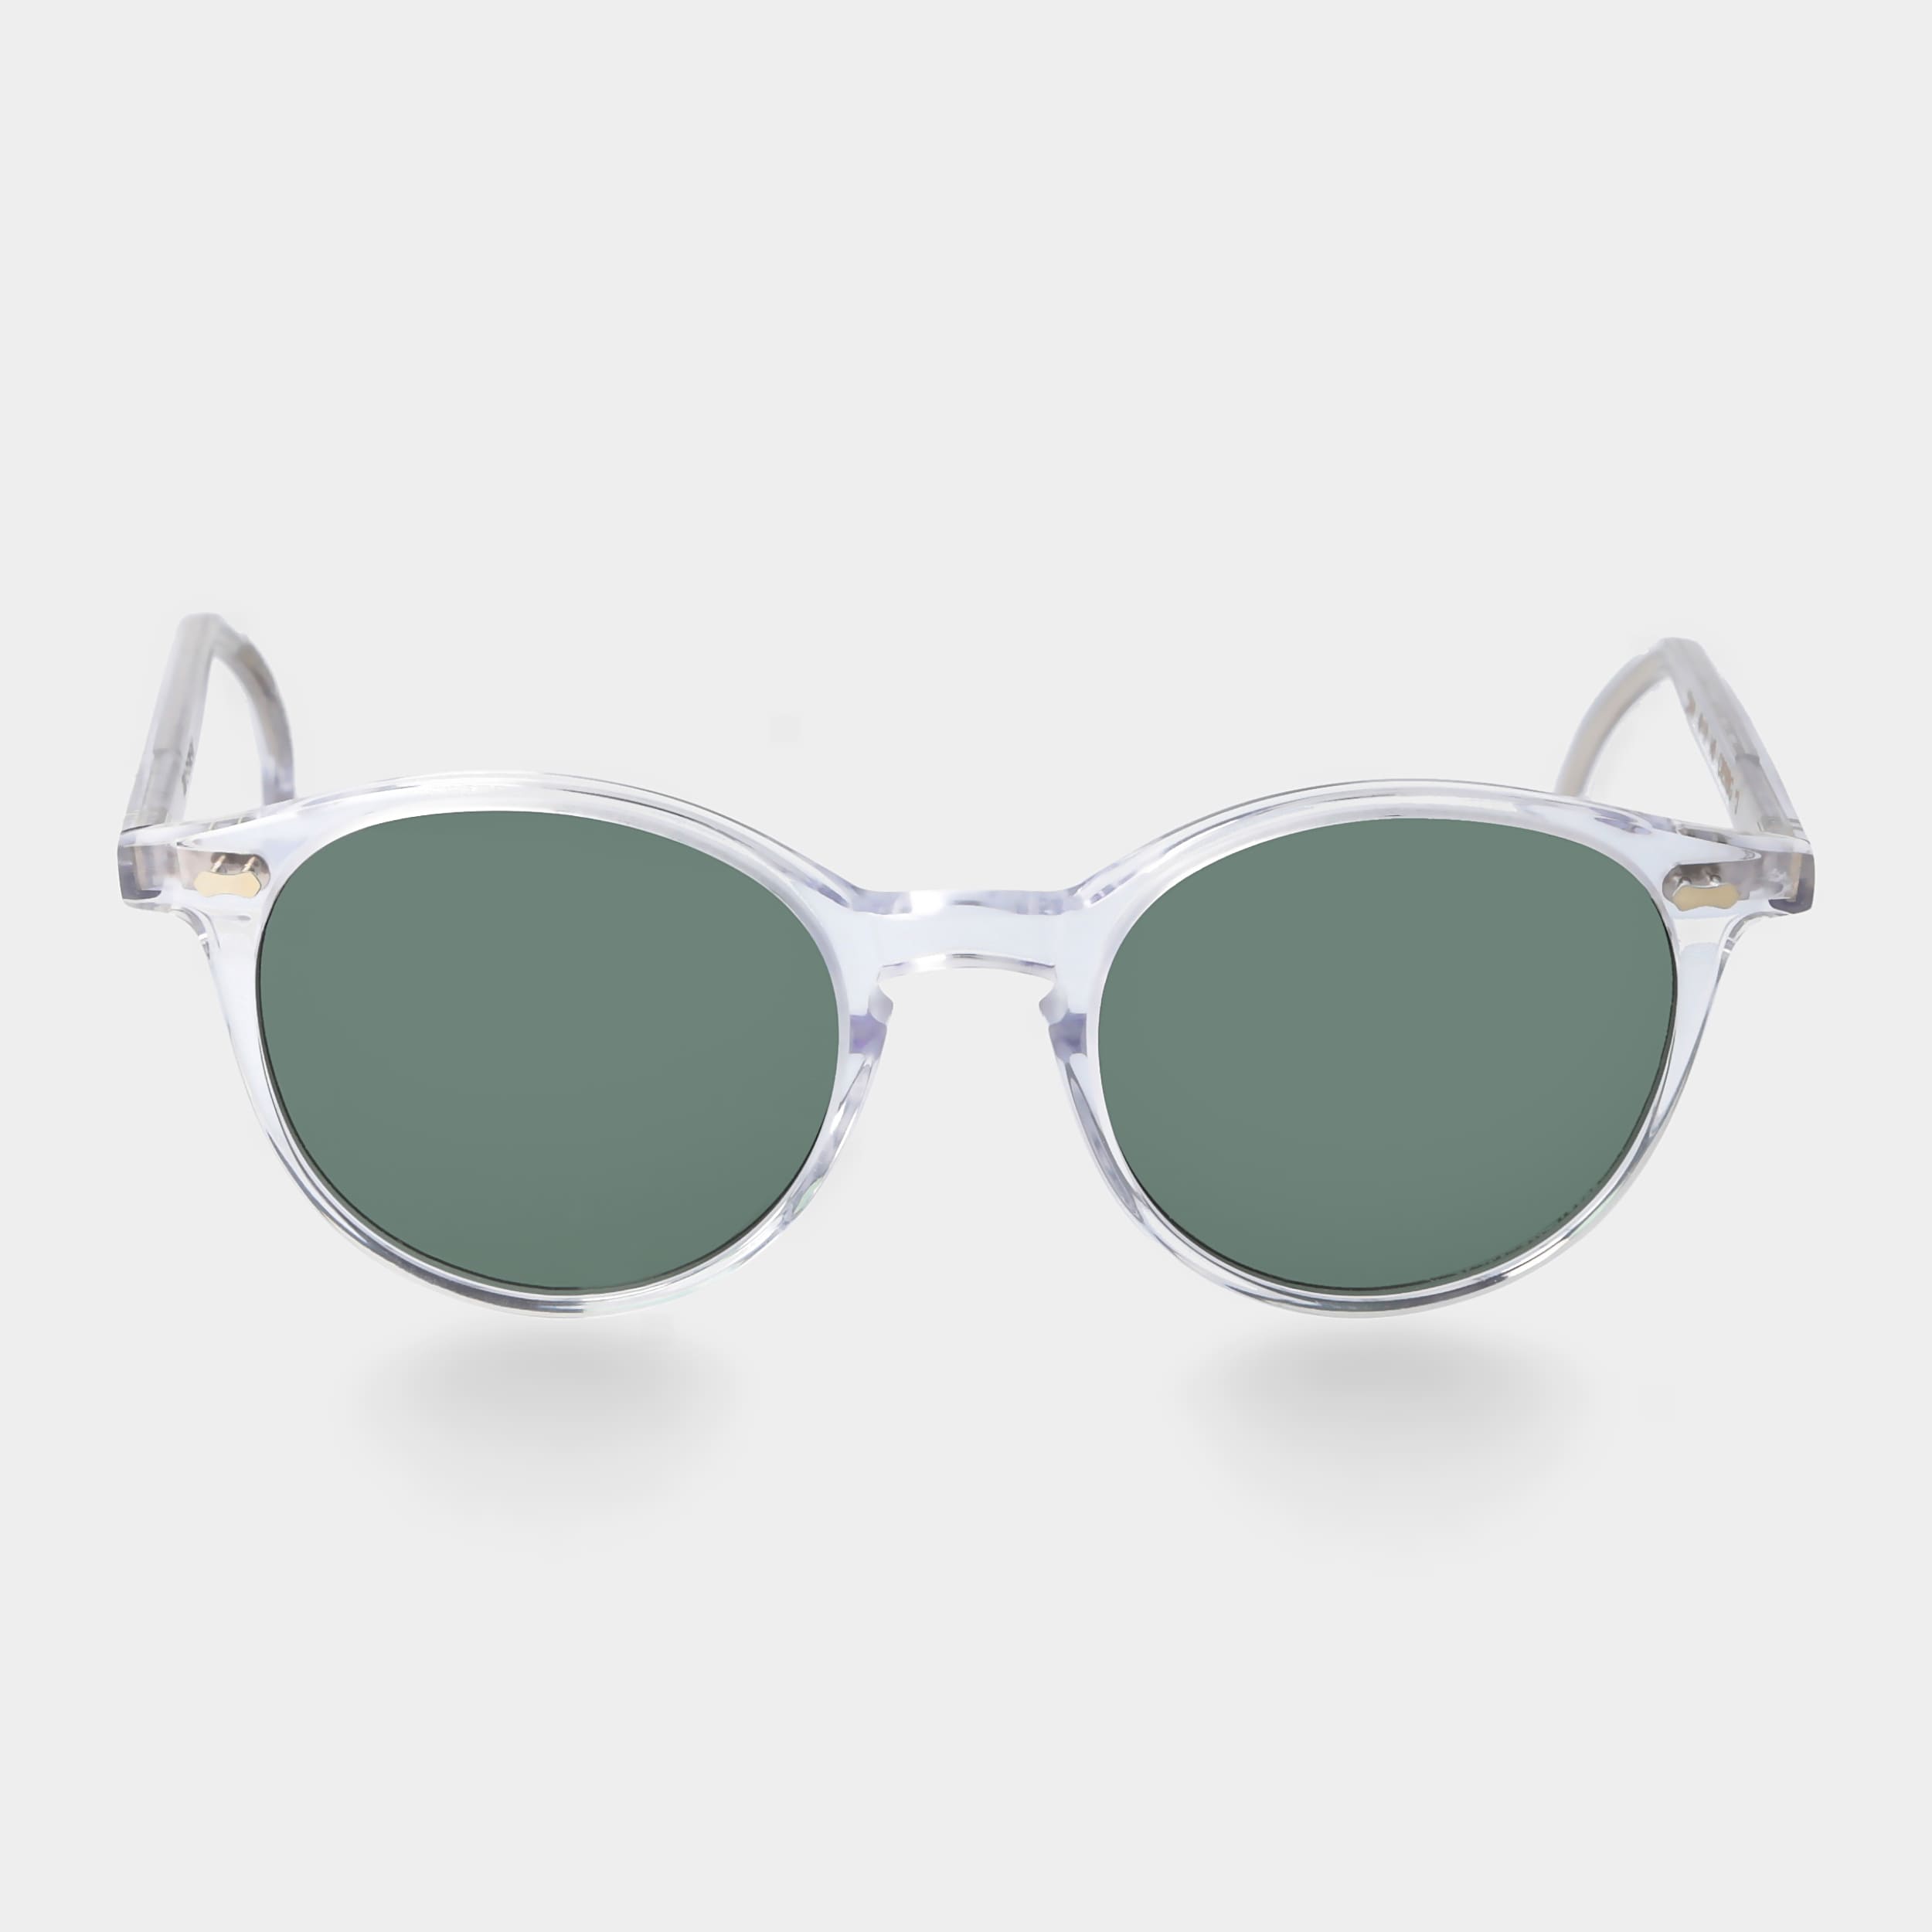 Eyewear und polarisierten TBD | mit Rahmen Gläsern Sonnenbrille klarem